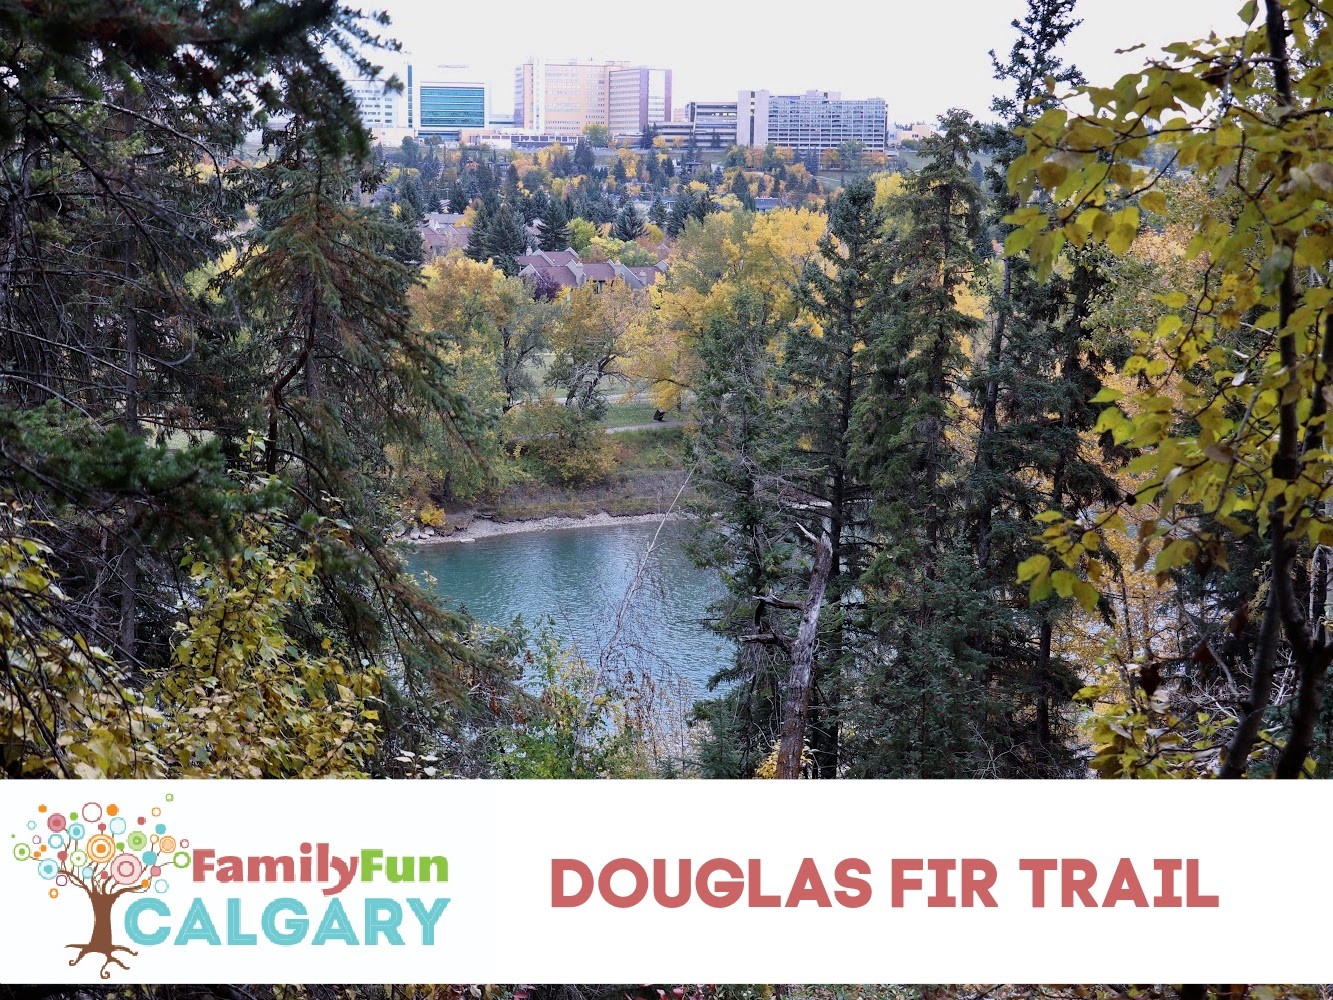 Douglas Fir Trail Edworthy Park (Family Fun Calgary)